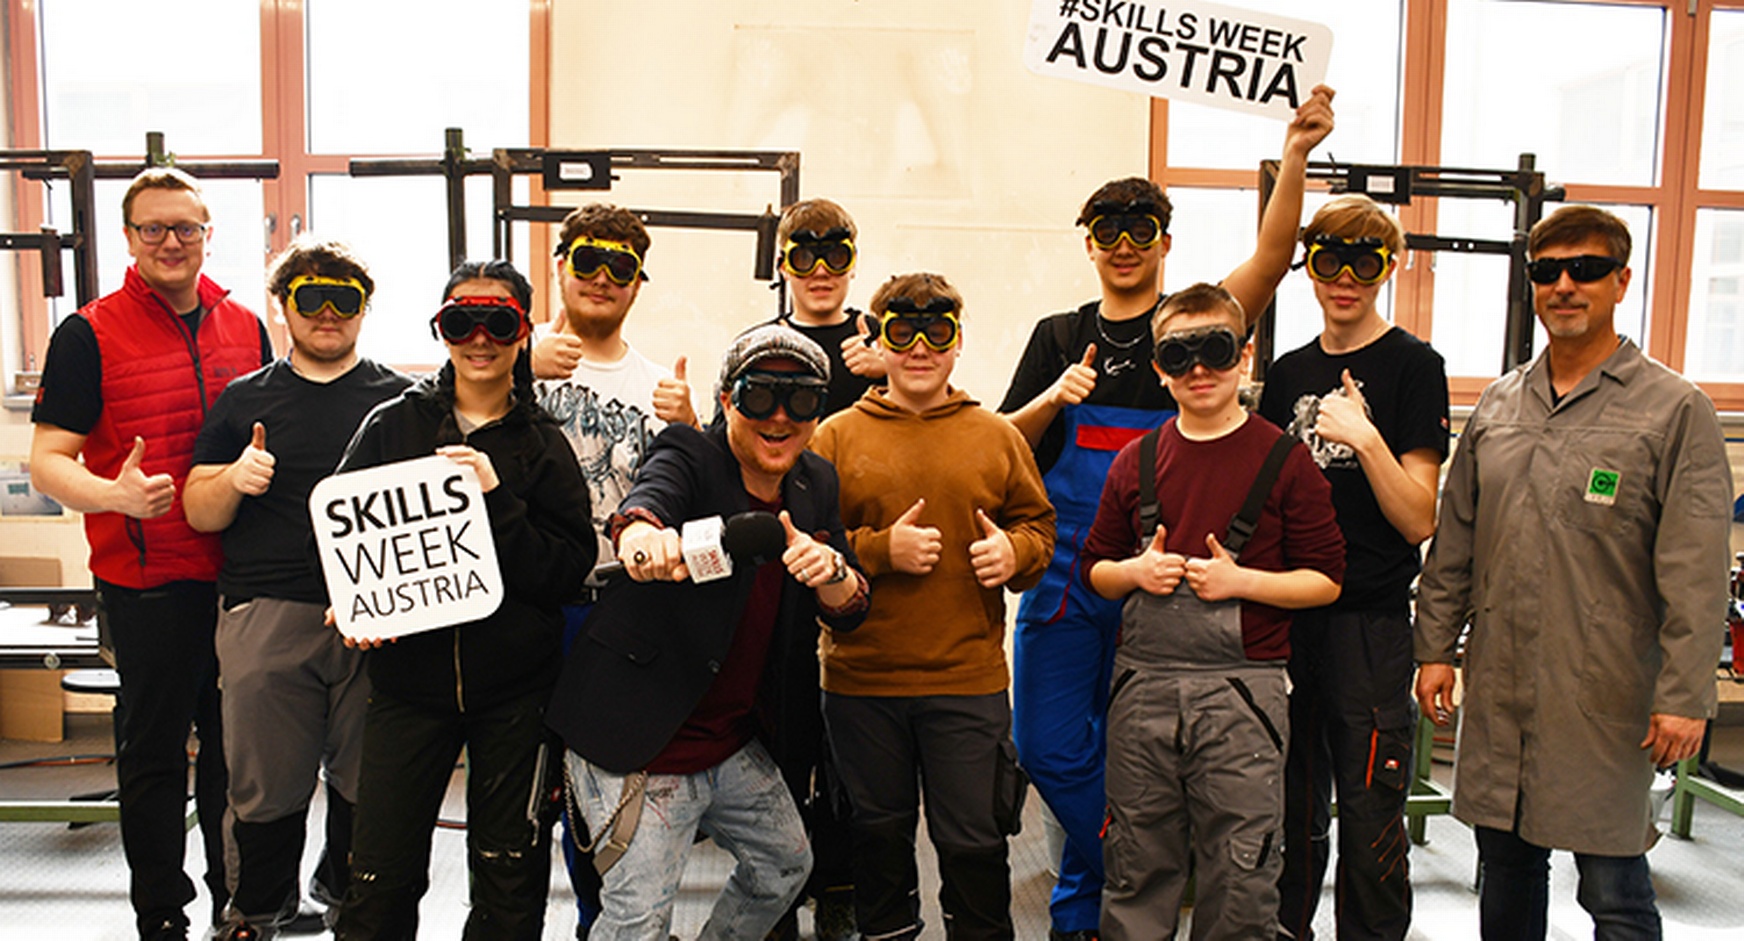 Gruppenfoto mehrerer Personen mit Schutzbrillen, zwei mit Schildern mit Schriftzug Skills Week Austria